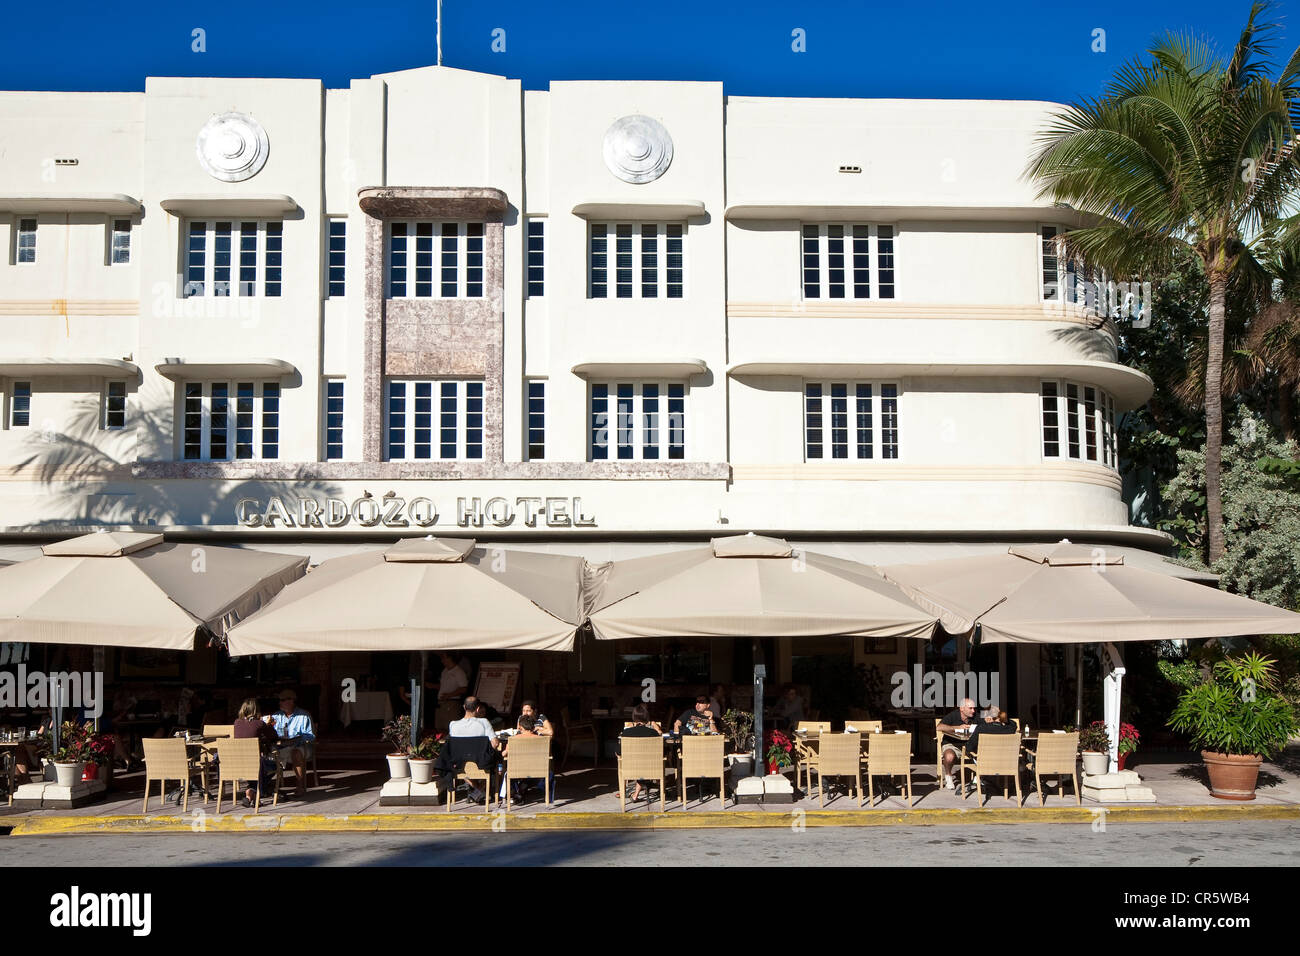 United States, Florida, Miami Beach, South Beach, le quartier Art déco, Ocean Drive, Cardozo Hotel construit en 1939 par l'architecte Banque D'Images